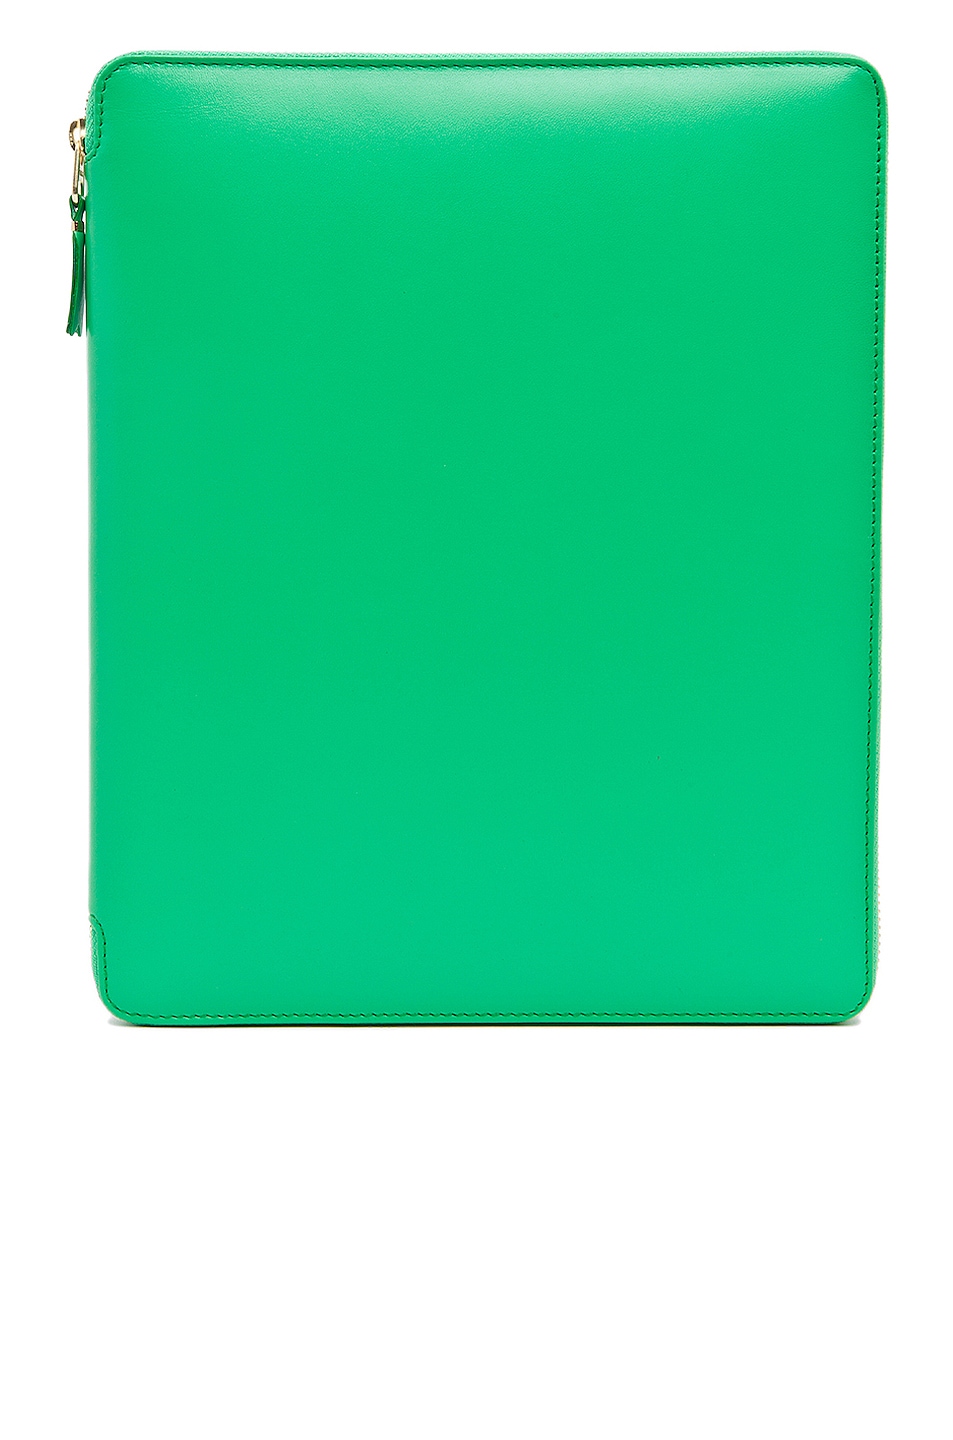 Classic iPad Case in Green